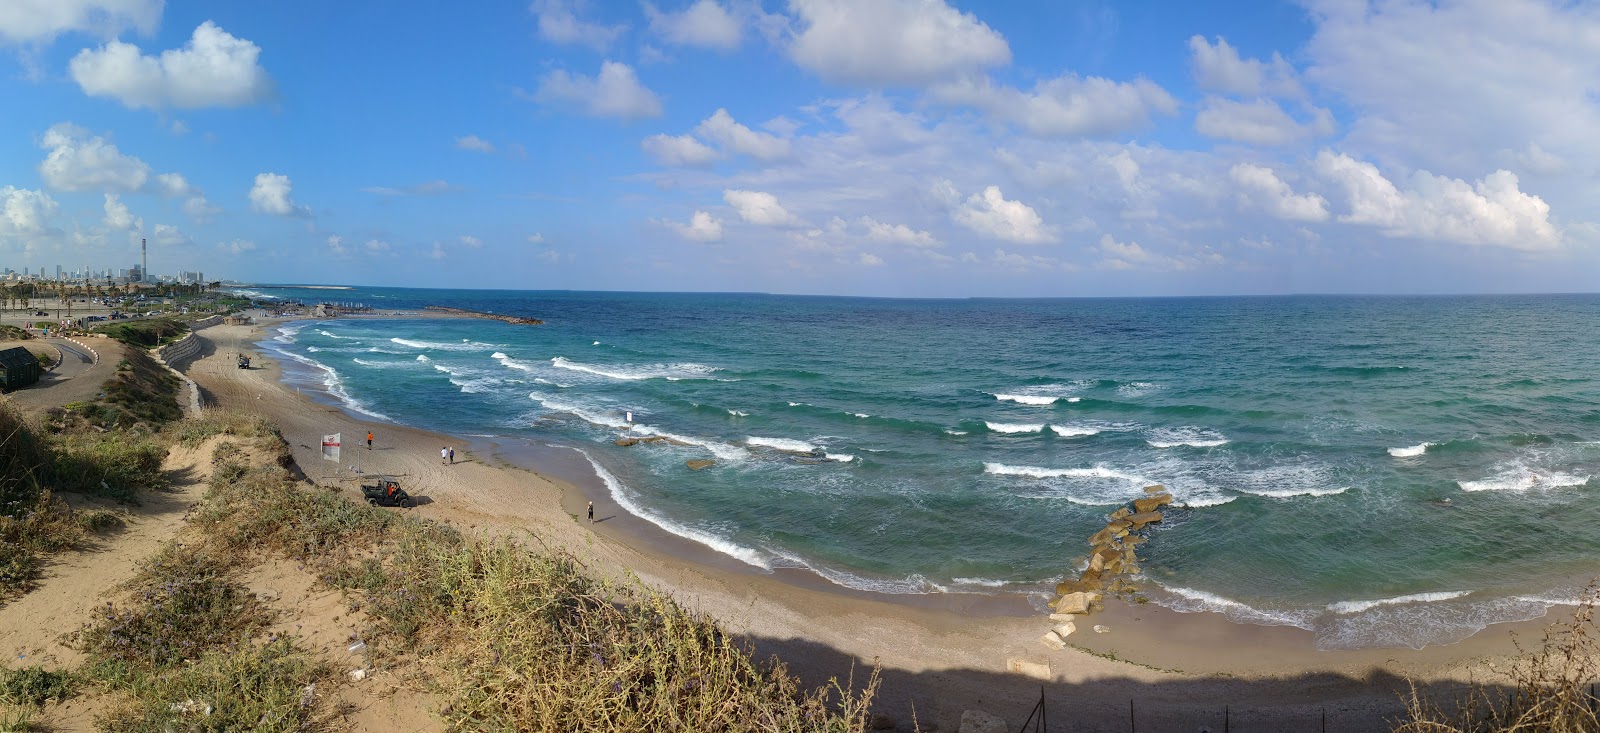 Fotografie cu Tel Baruch beach cu o suprafață de nisip fin strălucitor